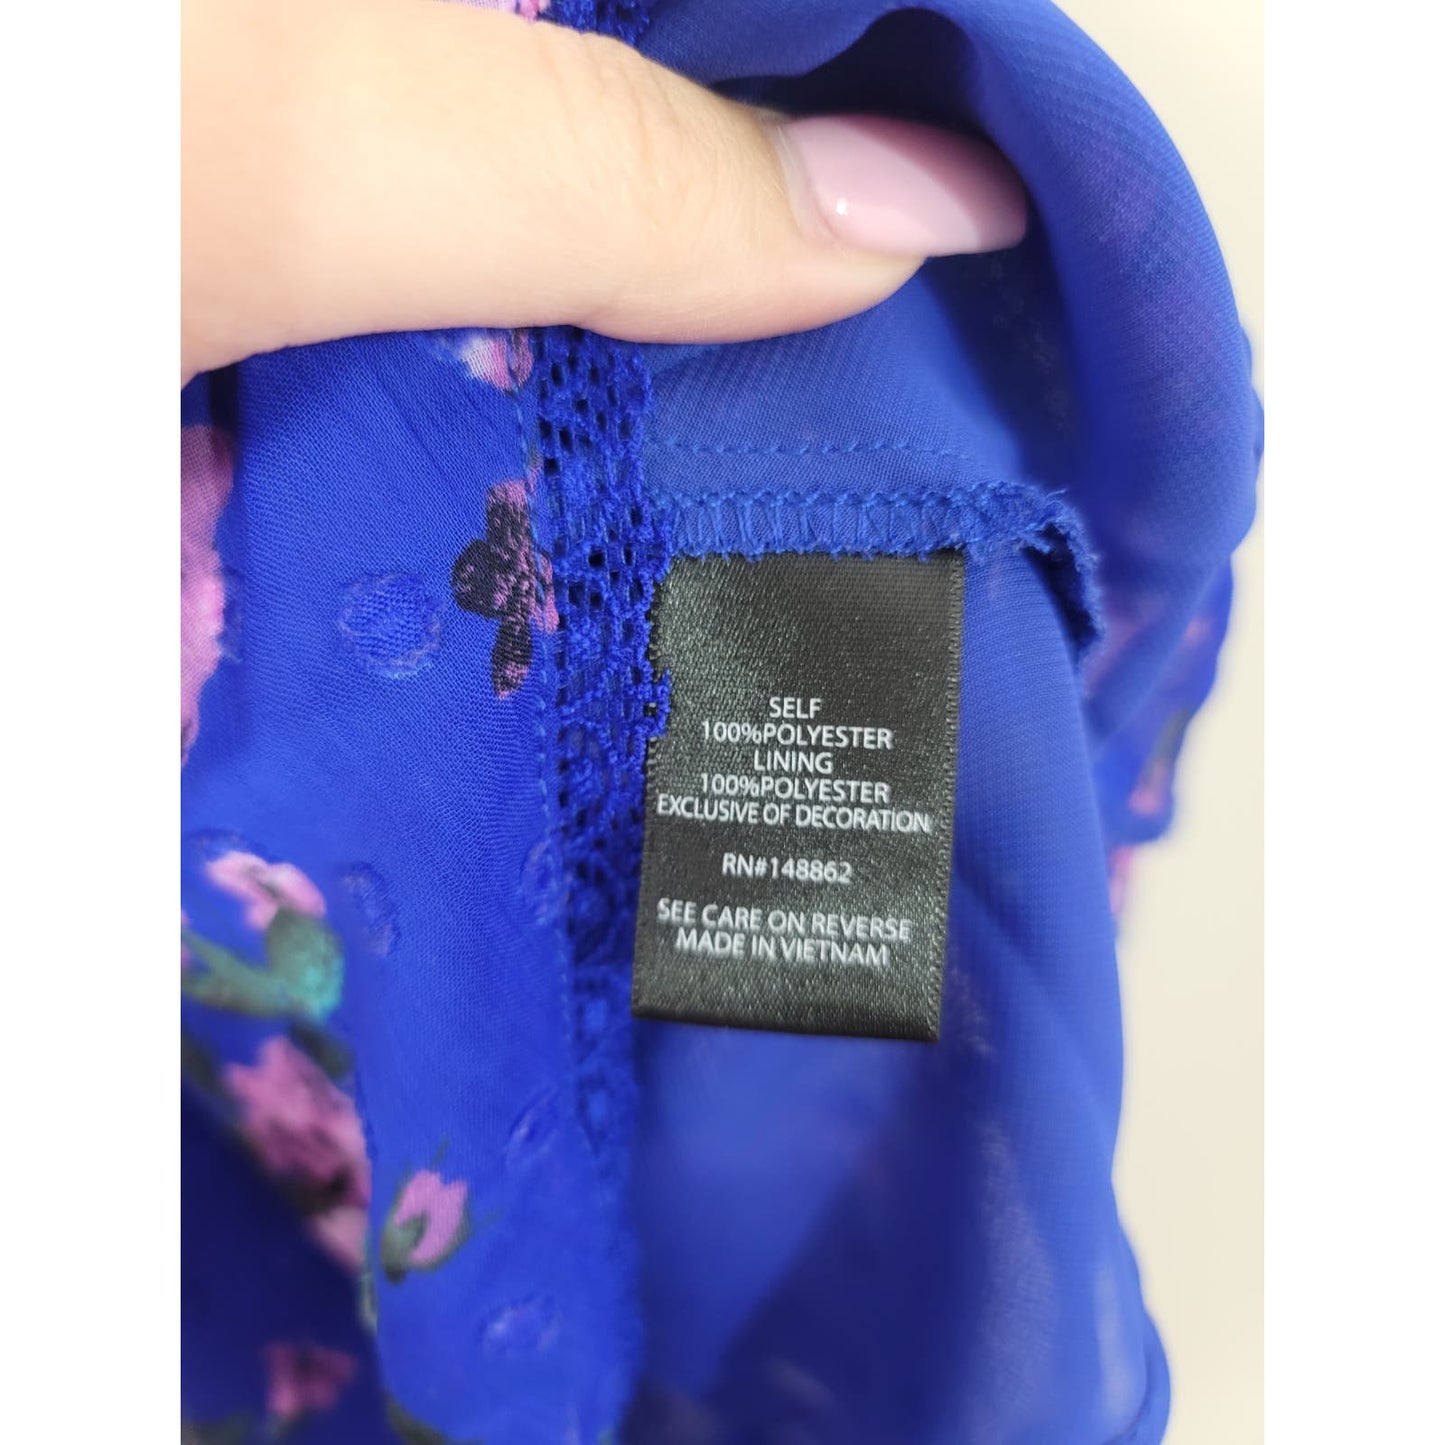 Torrid Peplum Blouse Top Blue Floral Chiffon Clip Dot Lace Inset Plus Size 0/0X